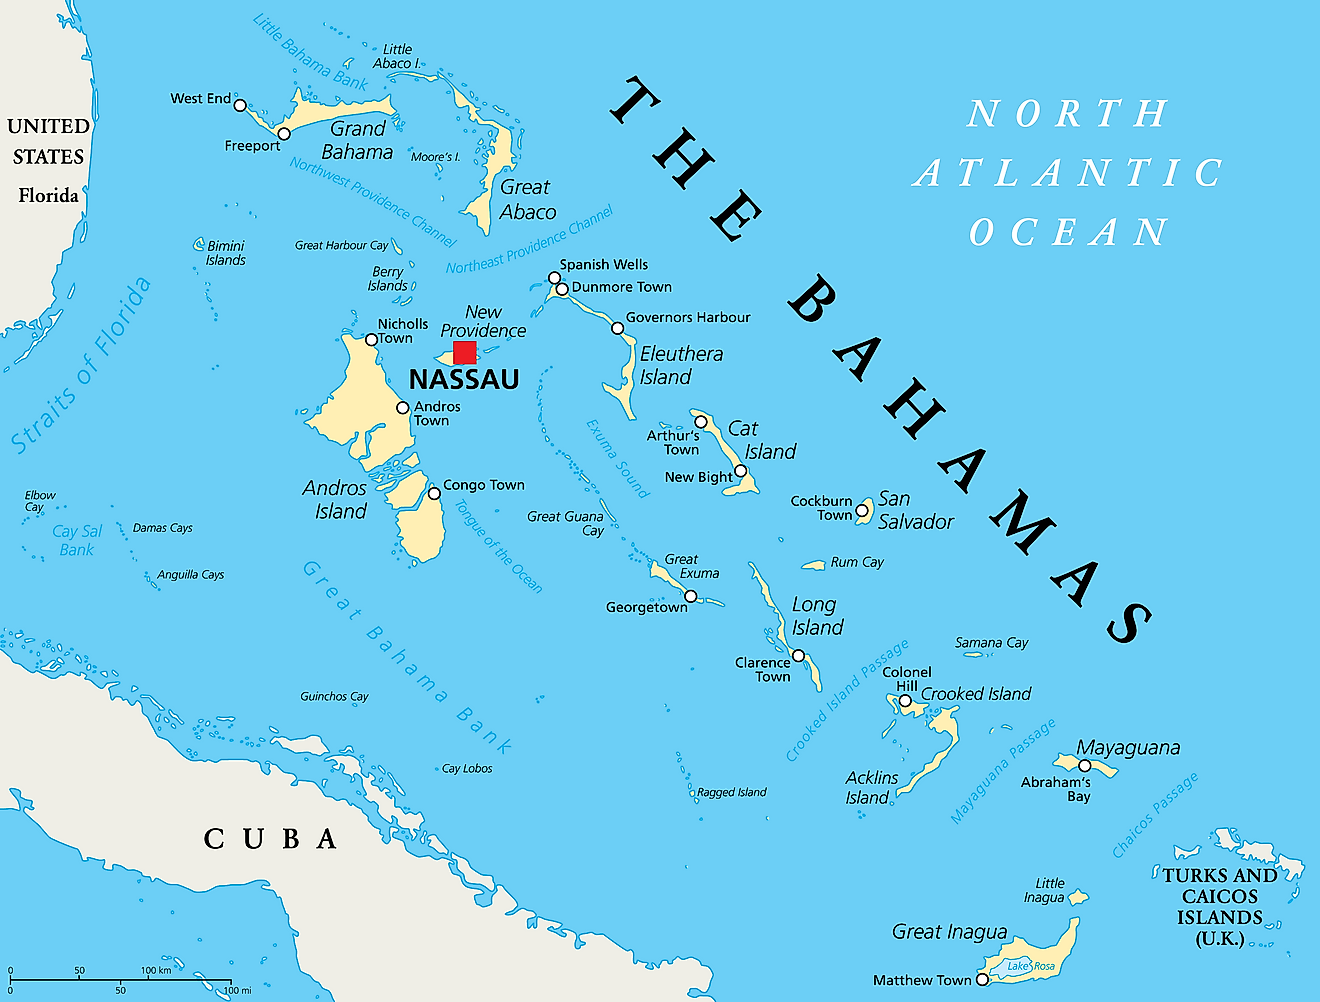 Labeled Map Of Bahamas Great Bahama Bank